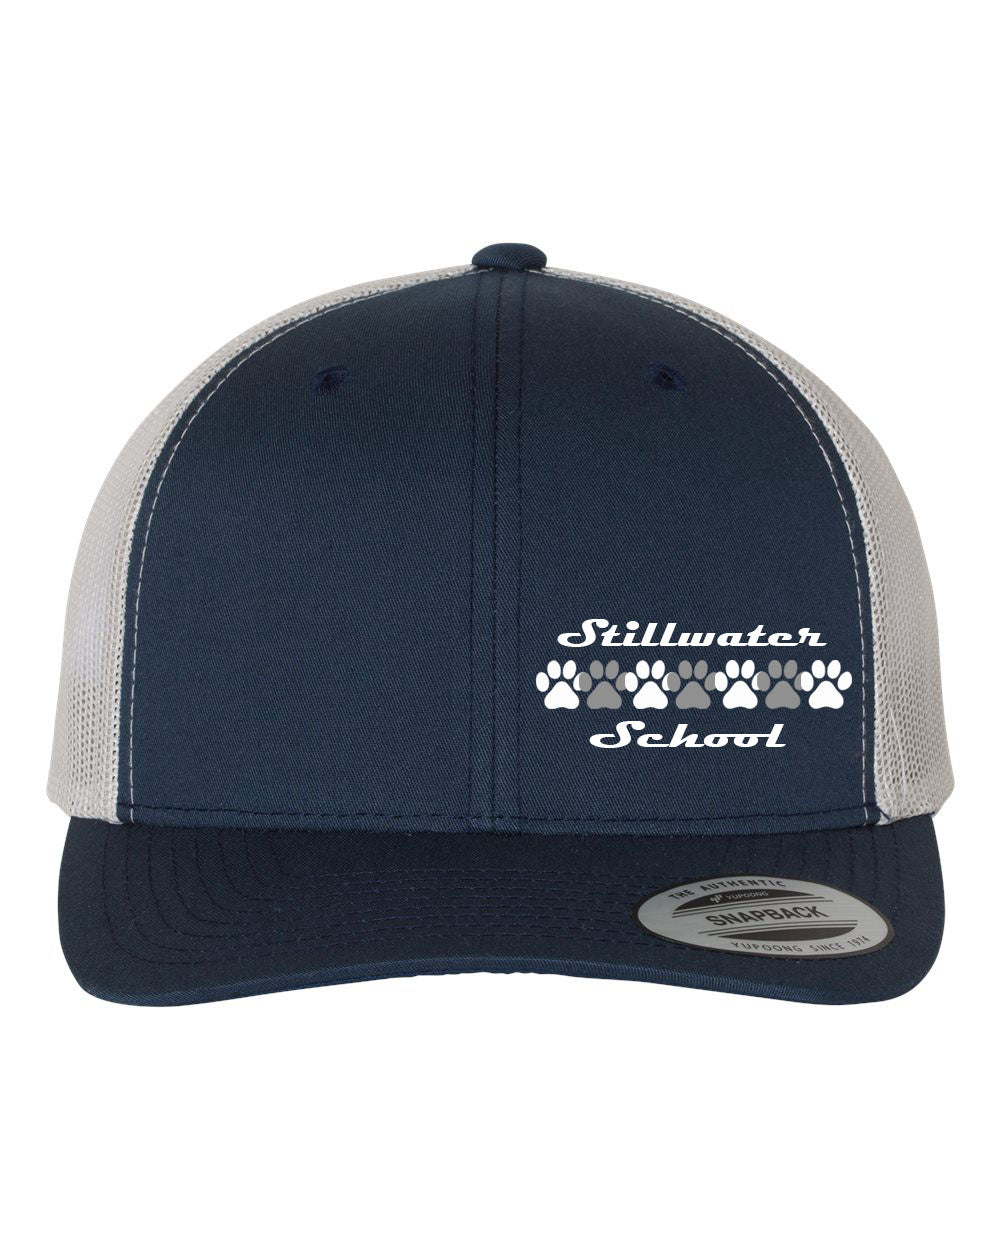 Stillwater Design 3 Trucker Hat